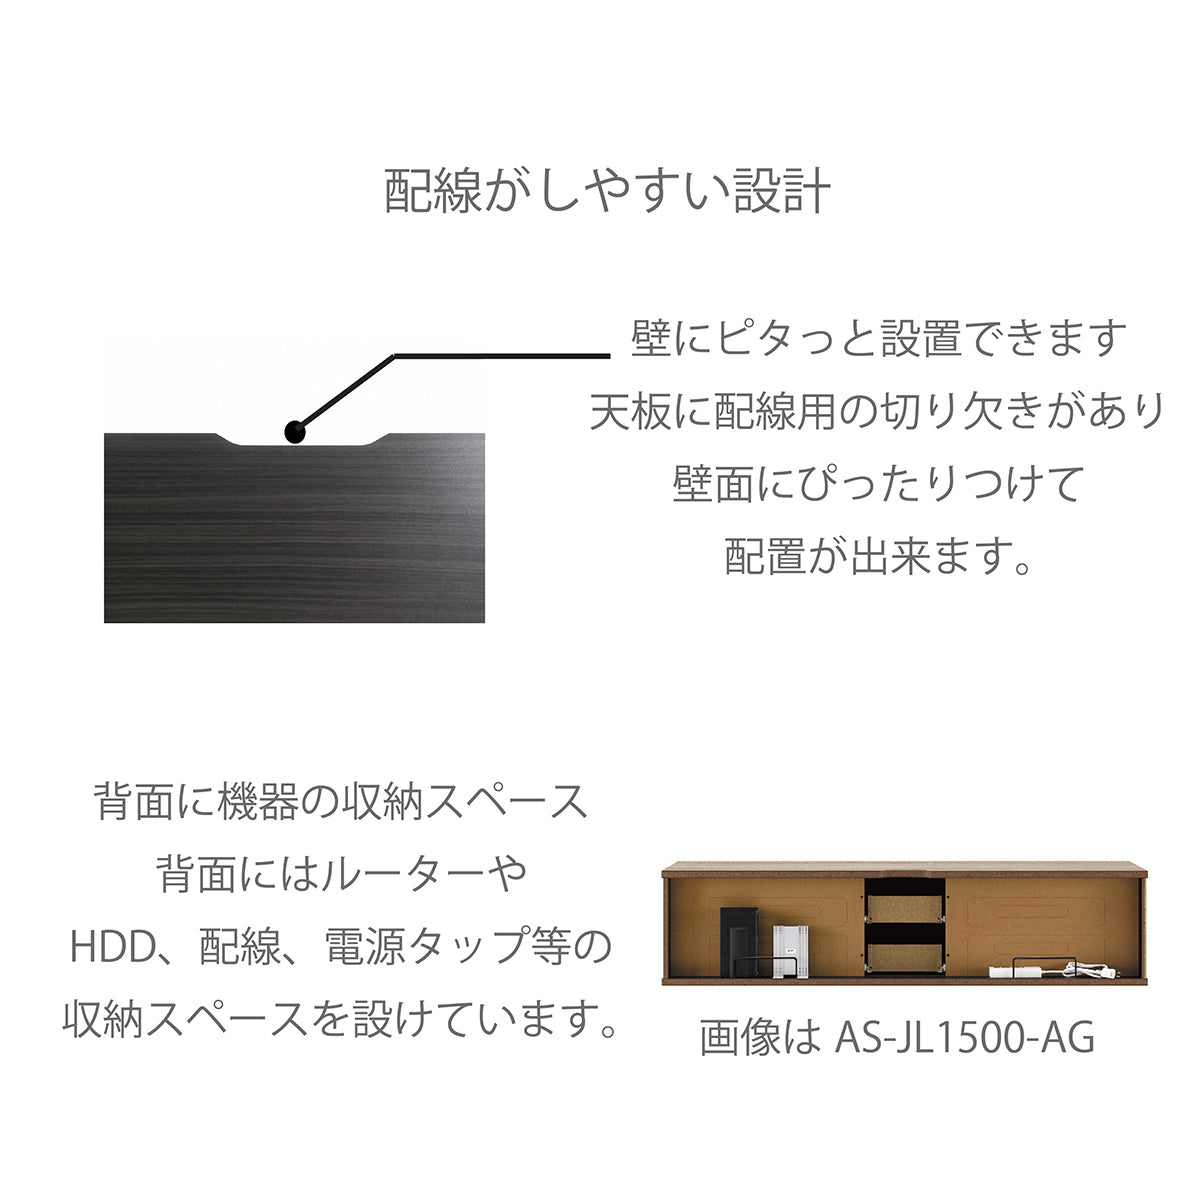 新品 朝日木材 AS-1300-AG テレビ台 55型 130 キャスター付き